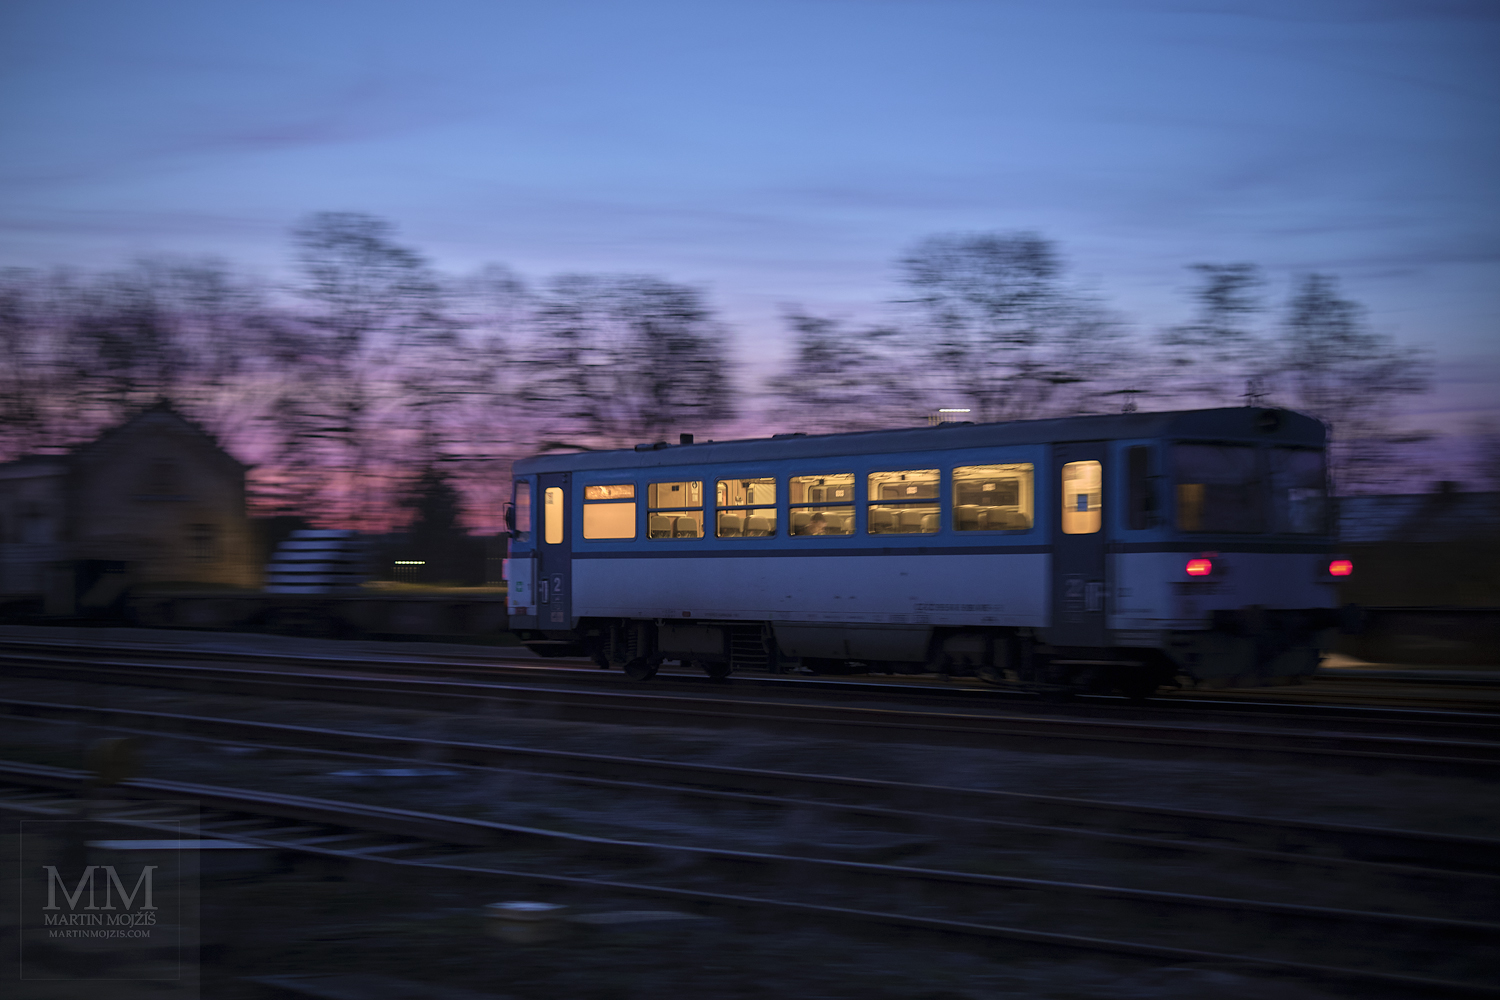 Velkoformátová umělecká fotografie motorového vlaku přijíždějícího na nádraží za soumraku. Martin Mojžíš.